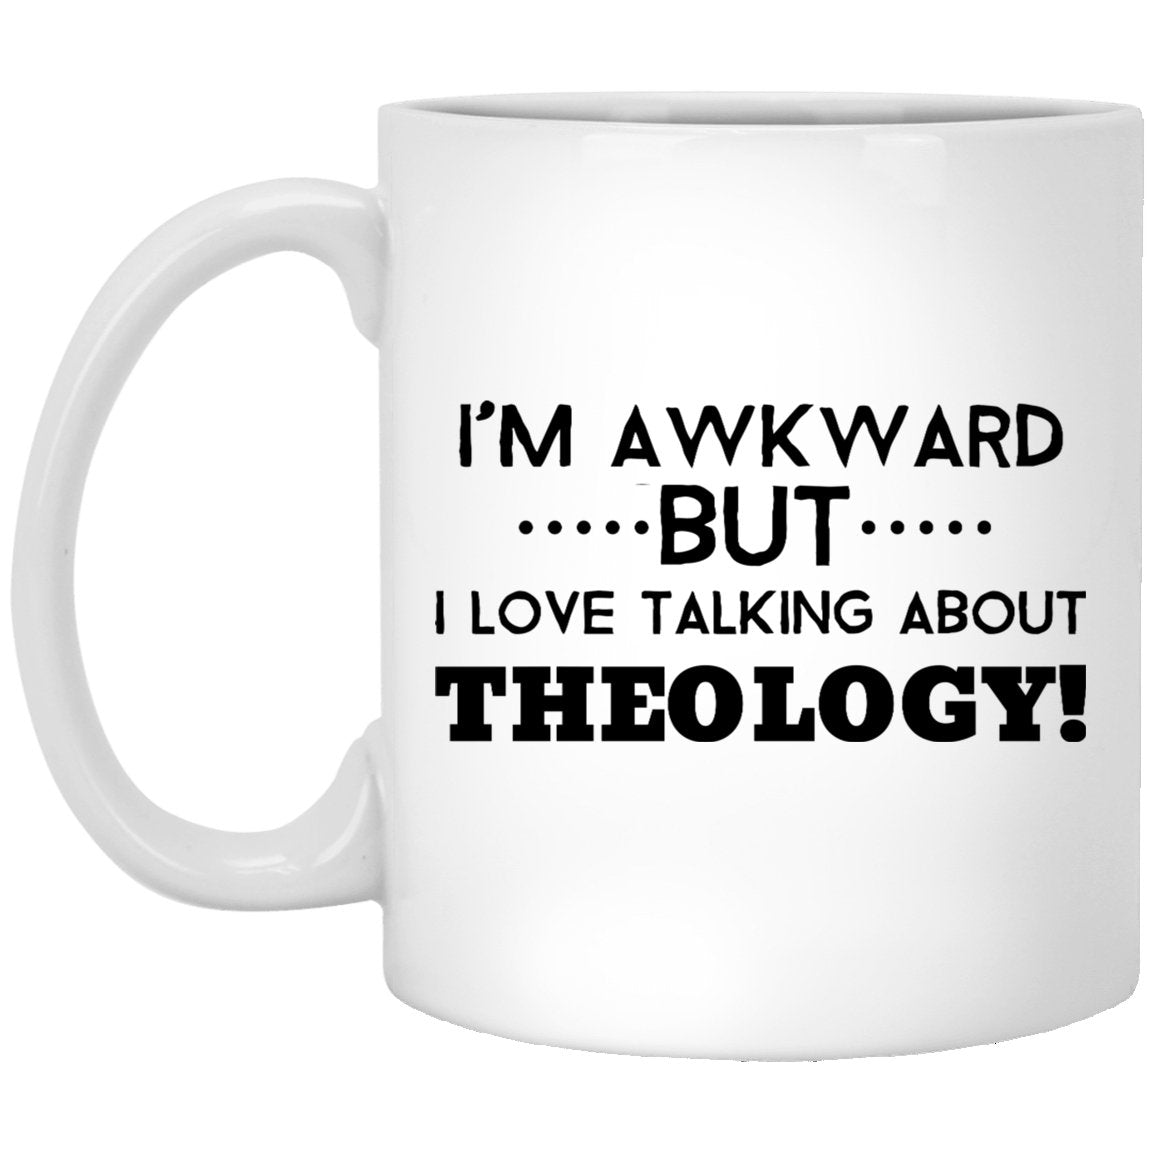 Awkward but Love Theology (11/15oz Black & White Mug) - SDG Clothing